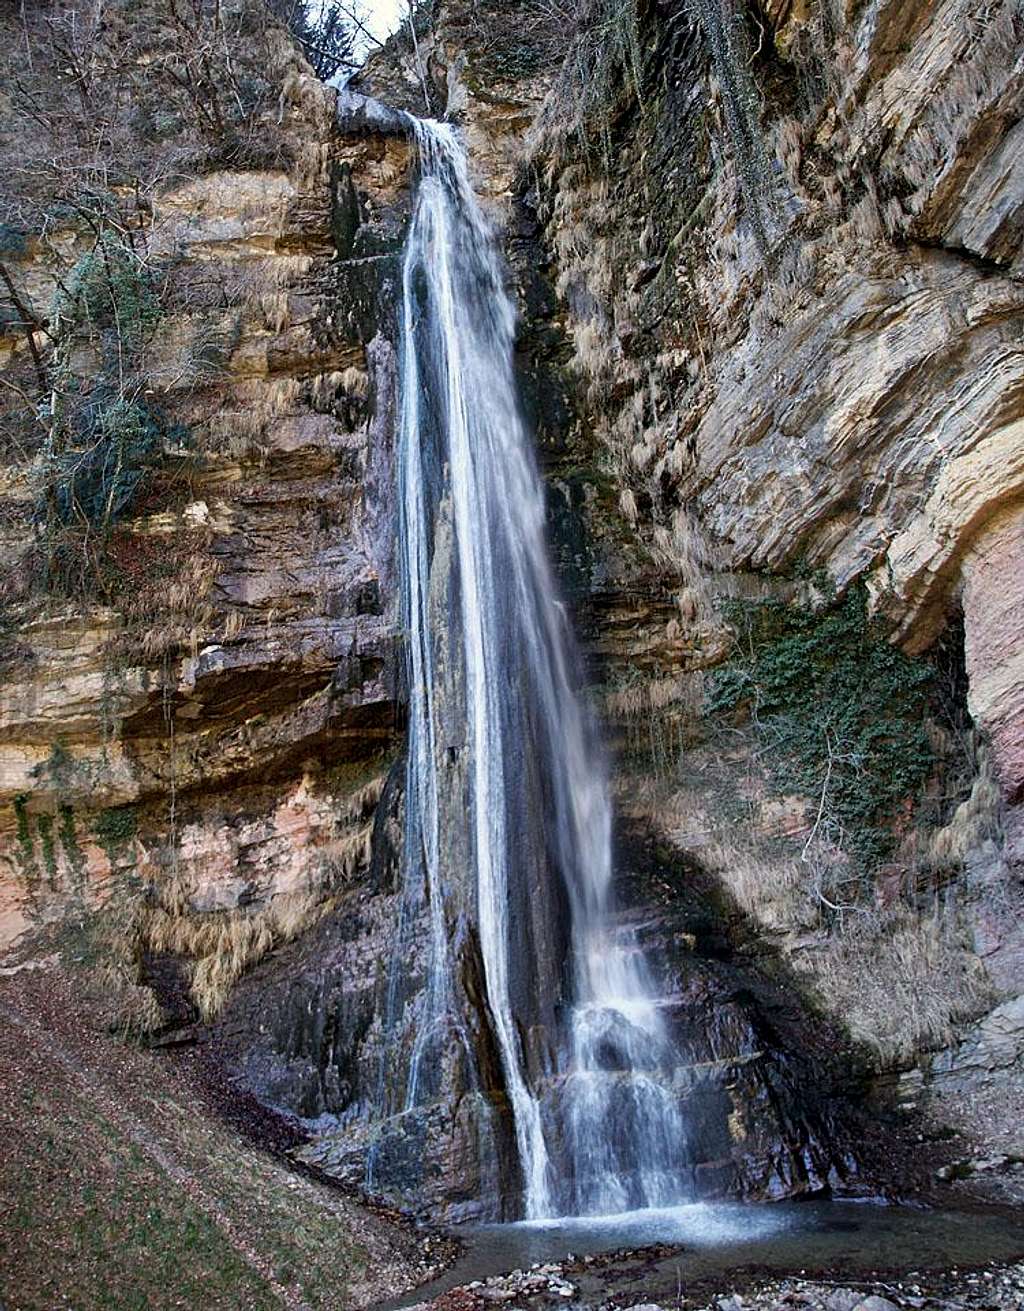 Salino waterfall